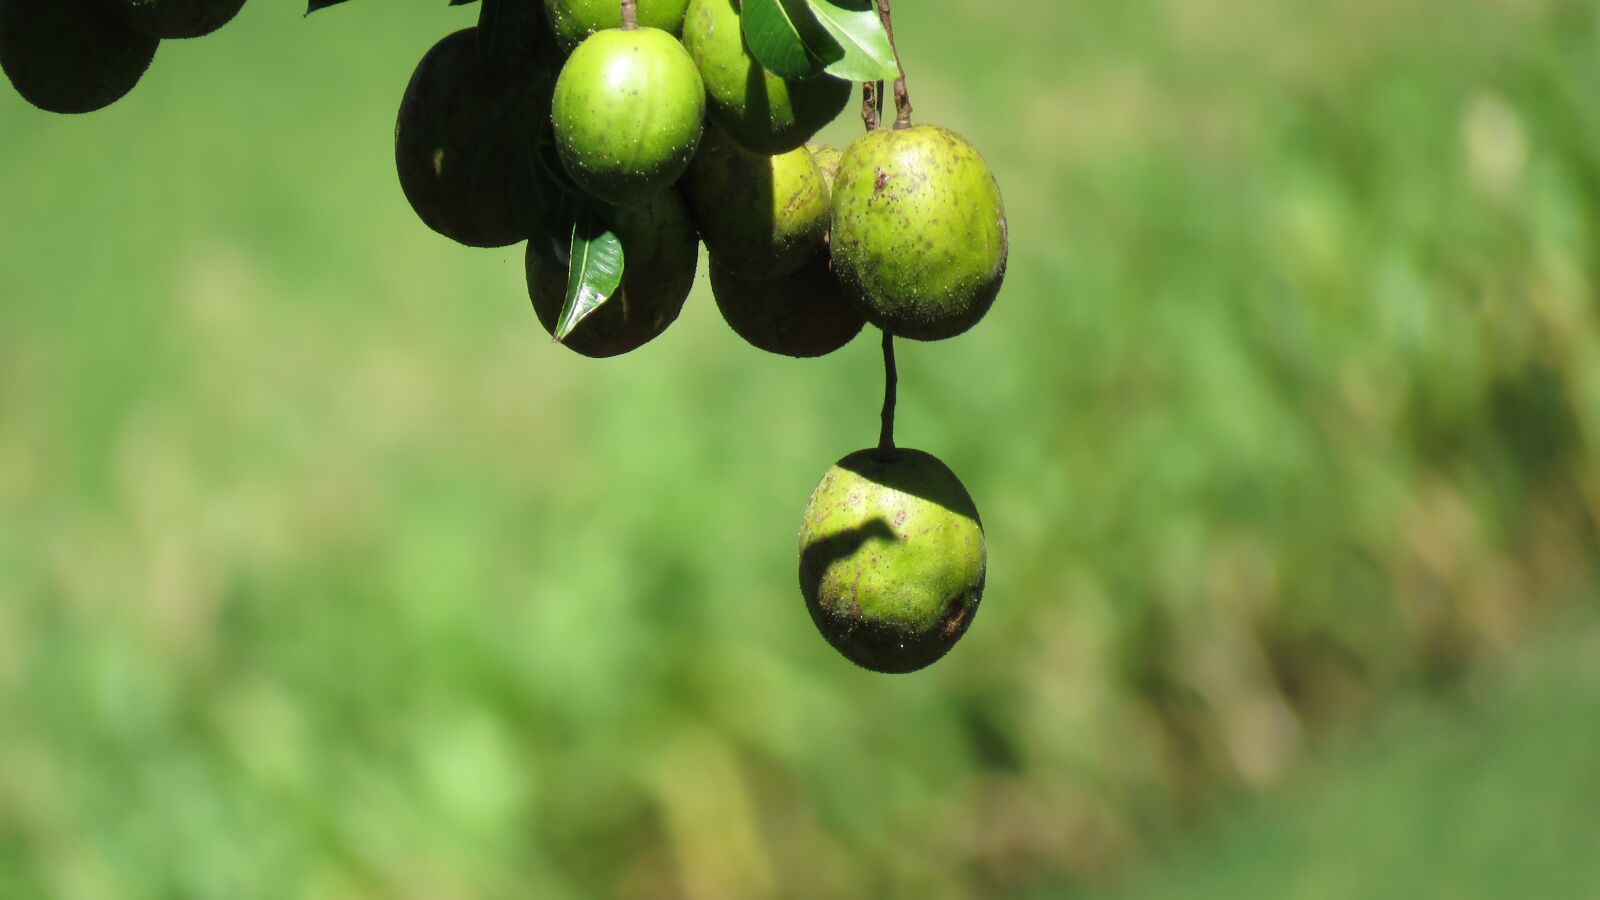 Canon PowerShot SX60 HS sample photo. Mango, fruit, tree photography